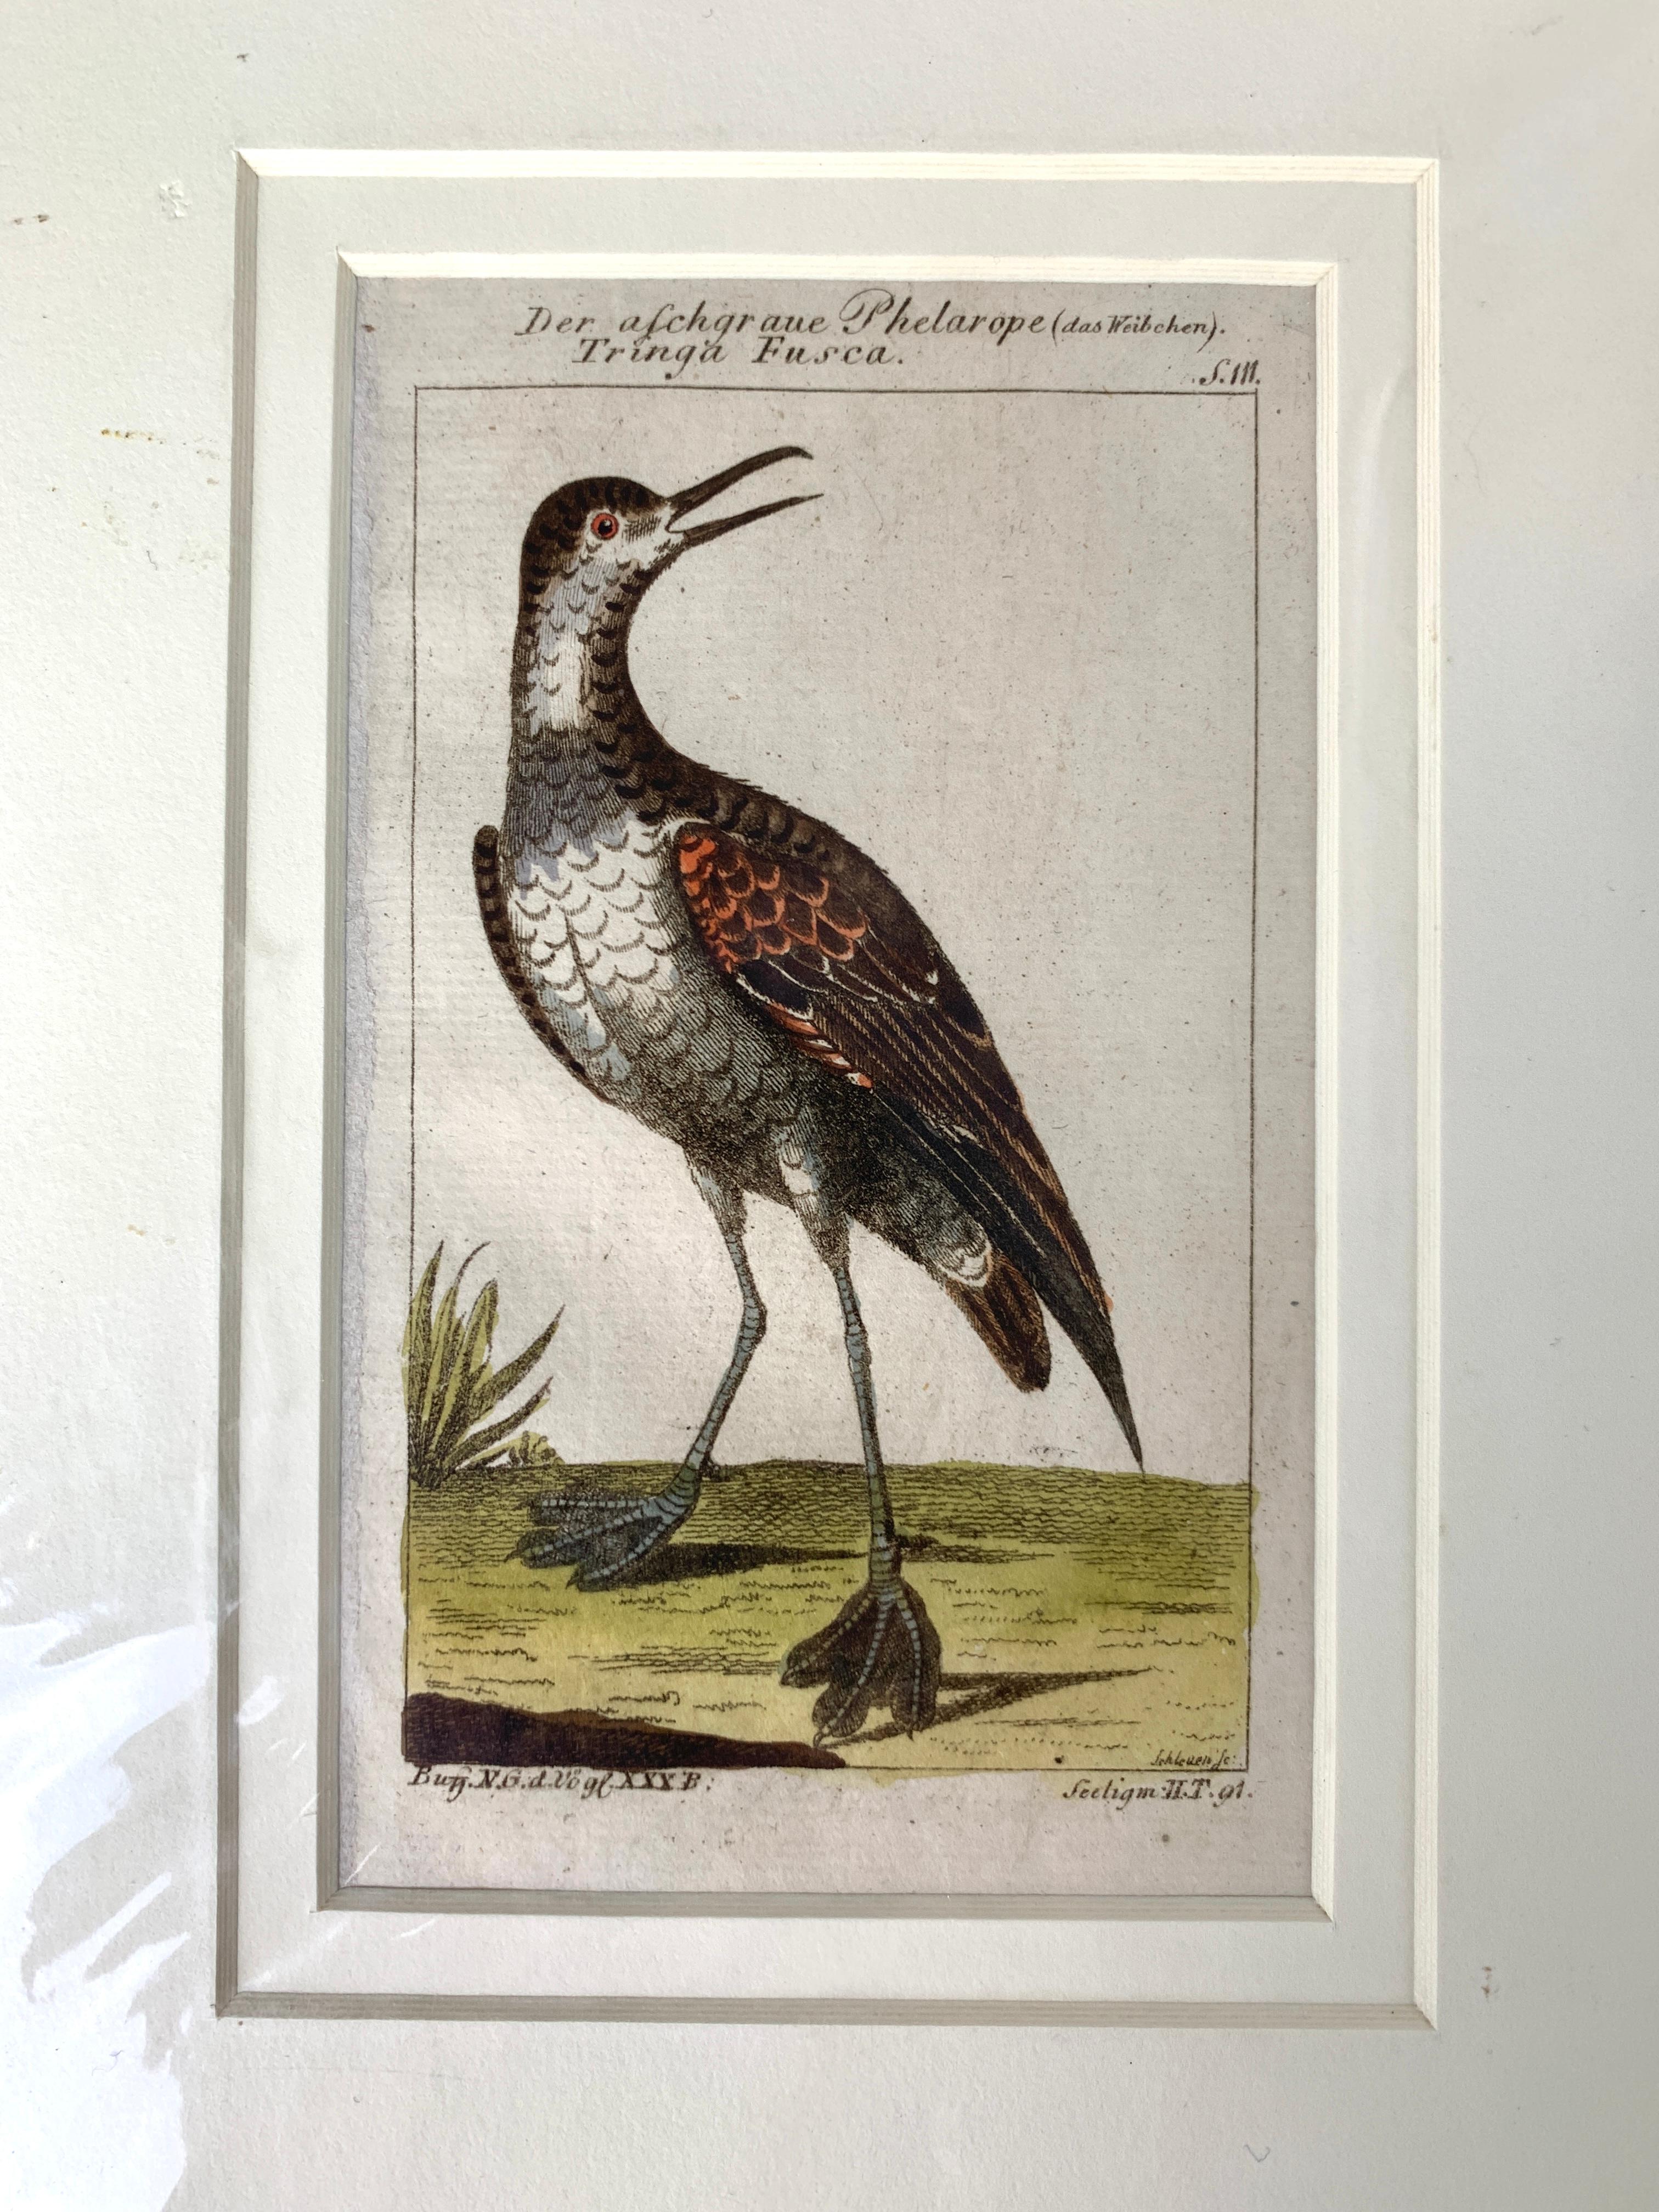 Es handelt sich um kleine, edelsteinartige, individuelle Vogelszenen.
Es handelt sich um wunderschön gezeichnete, detaillierte Drucke von handkolorierten Kupferstichen aus einem der wichtigsten ornithologischen Werke des 18. Jahrhunderts. 
Diese